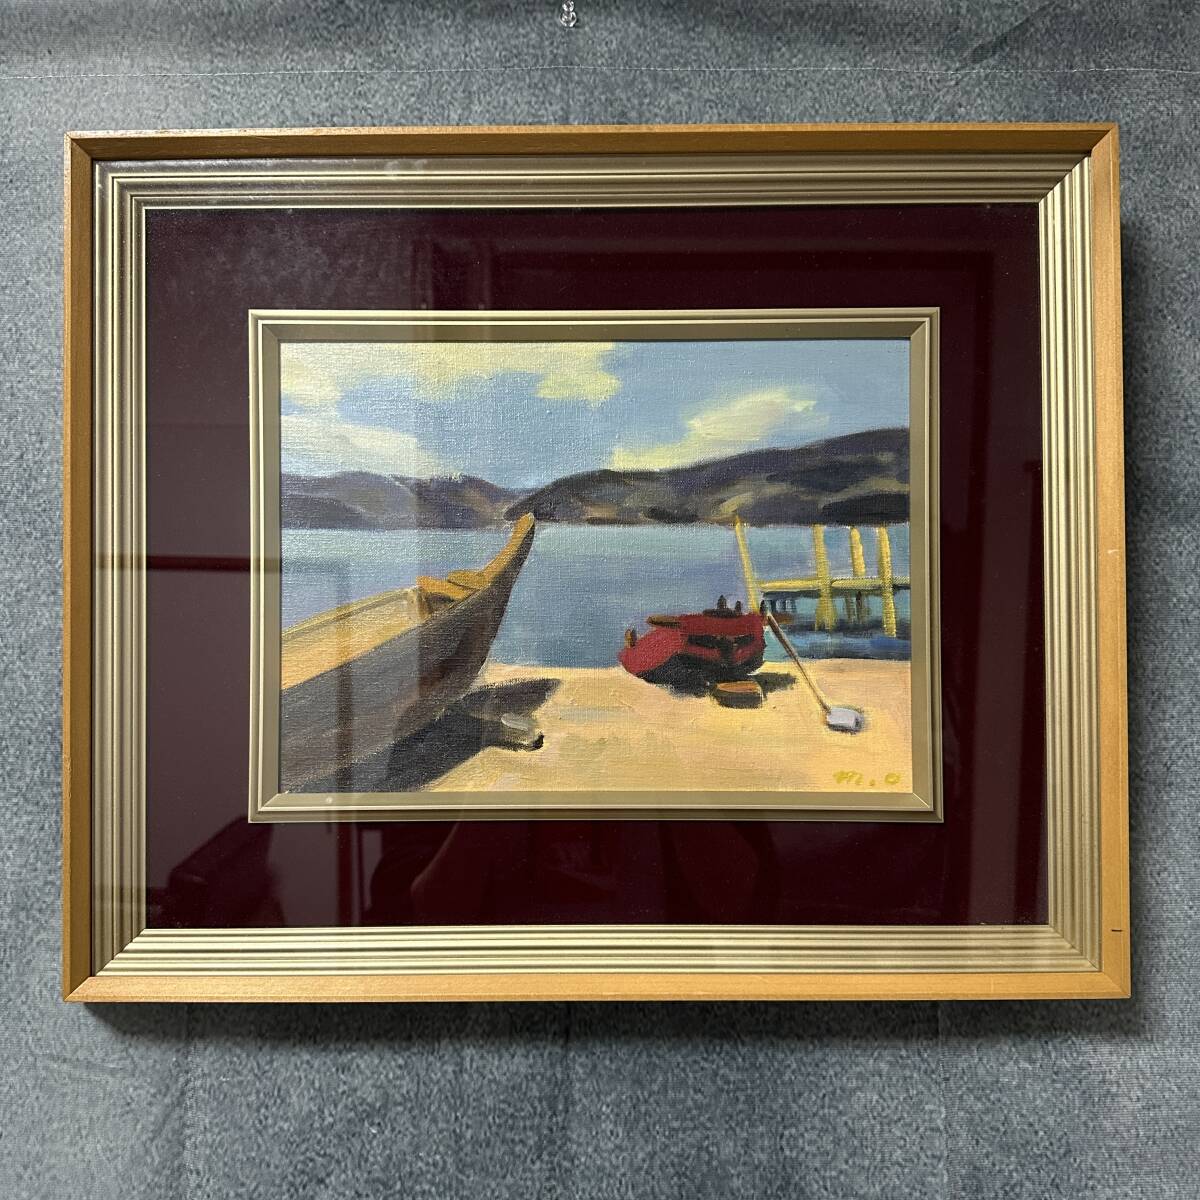 [असली] झील पर मासात्सुगु ओडा नाव, झील रीड्स तेल चित्रकला परिदृश्य चित्रकला आकार F4 पेंटिंग ललित कला (RA-038), चित्रकारी, तैल चित्र, प्रकृति, परिदृश्य चित्रकला